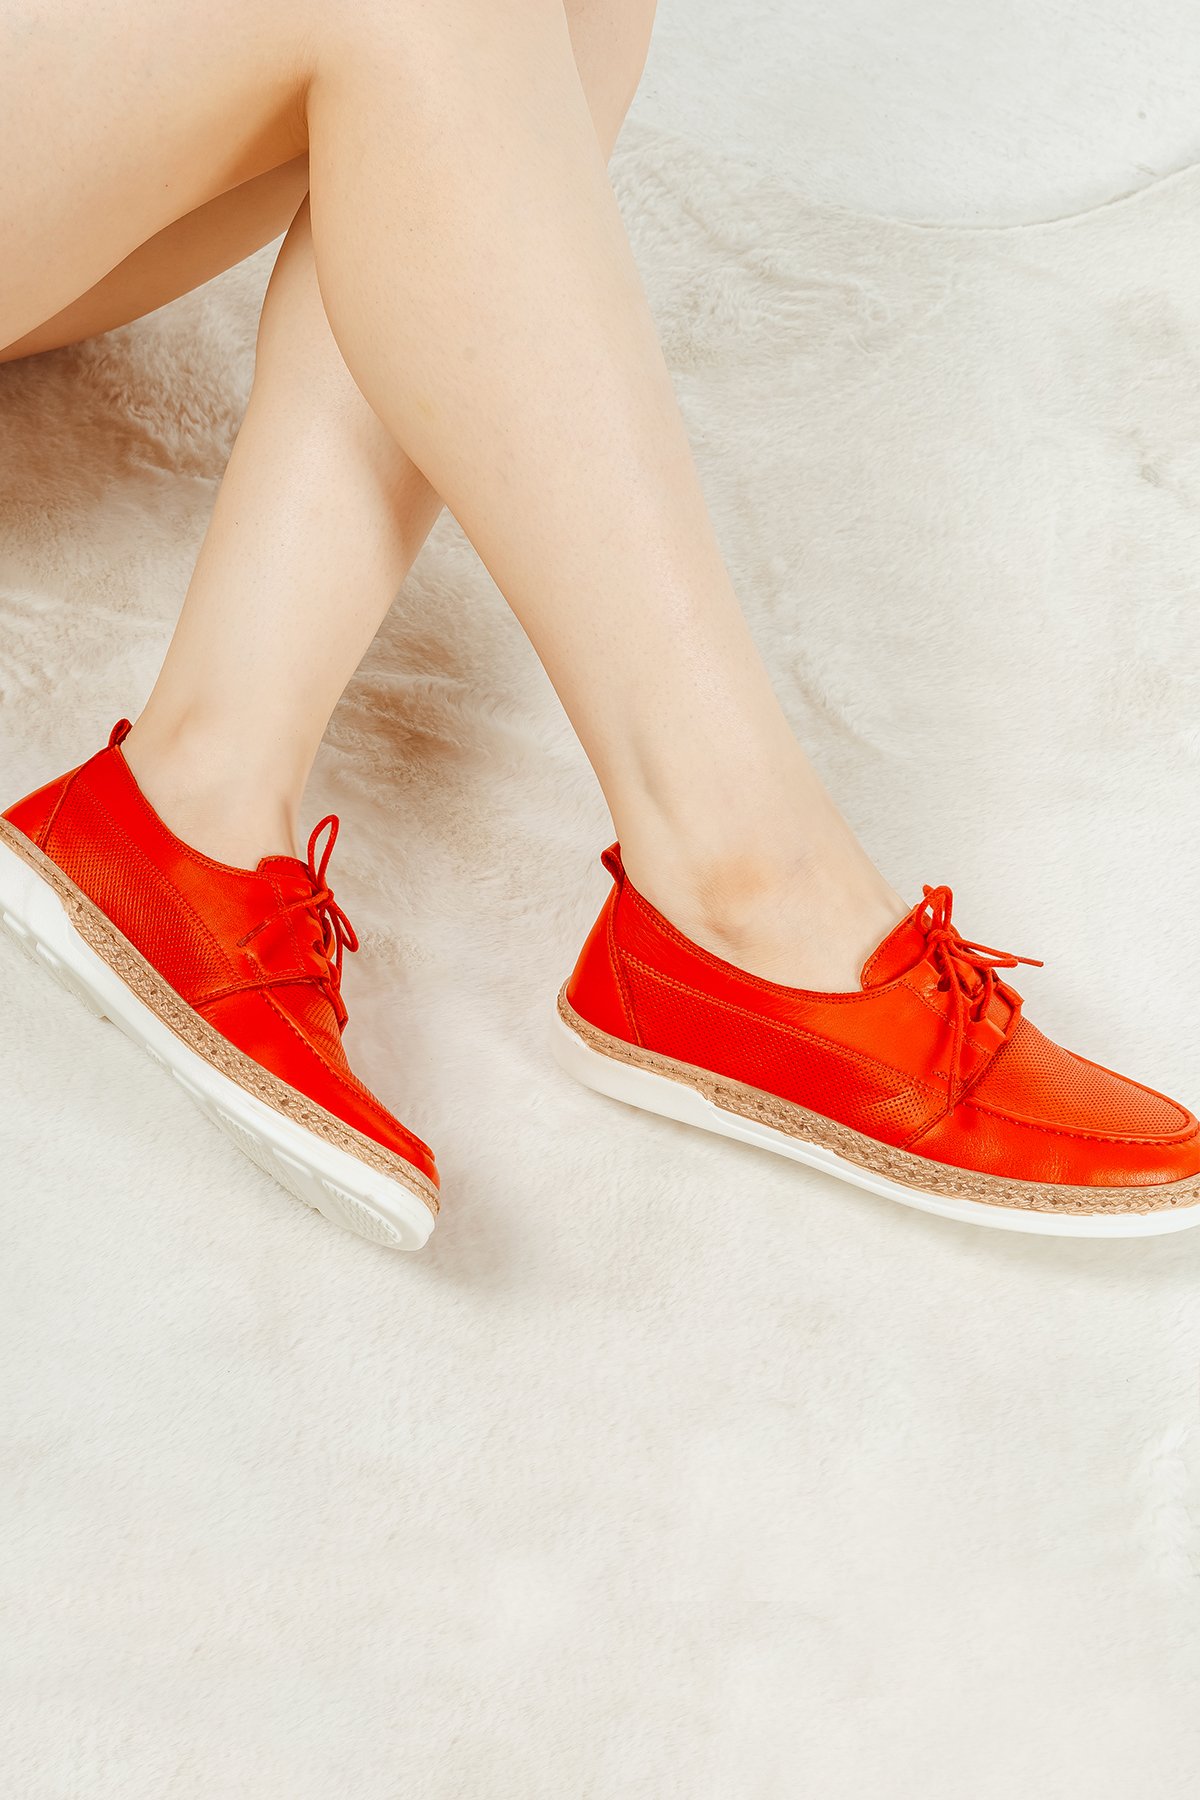 Cooliza Hakiki Deri Bağcıklı Günlük Rahat Kadın Casual Ayakkabı SİYAH - Kırmızı